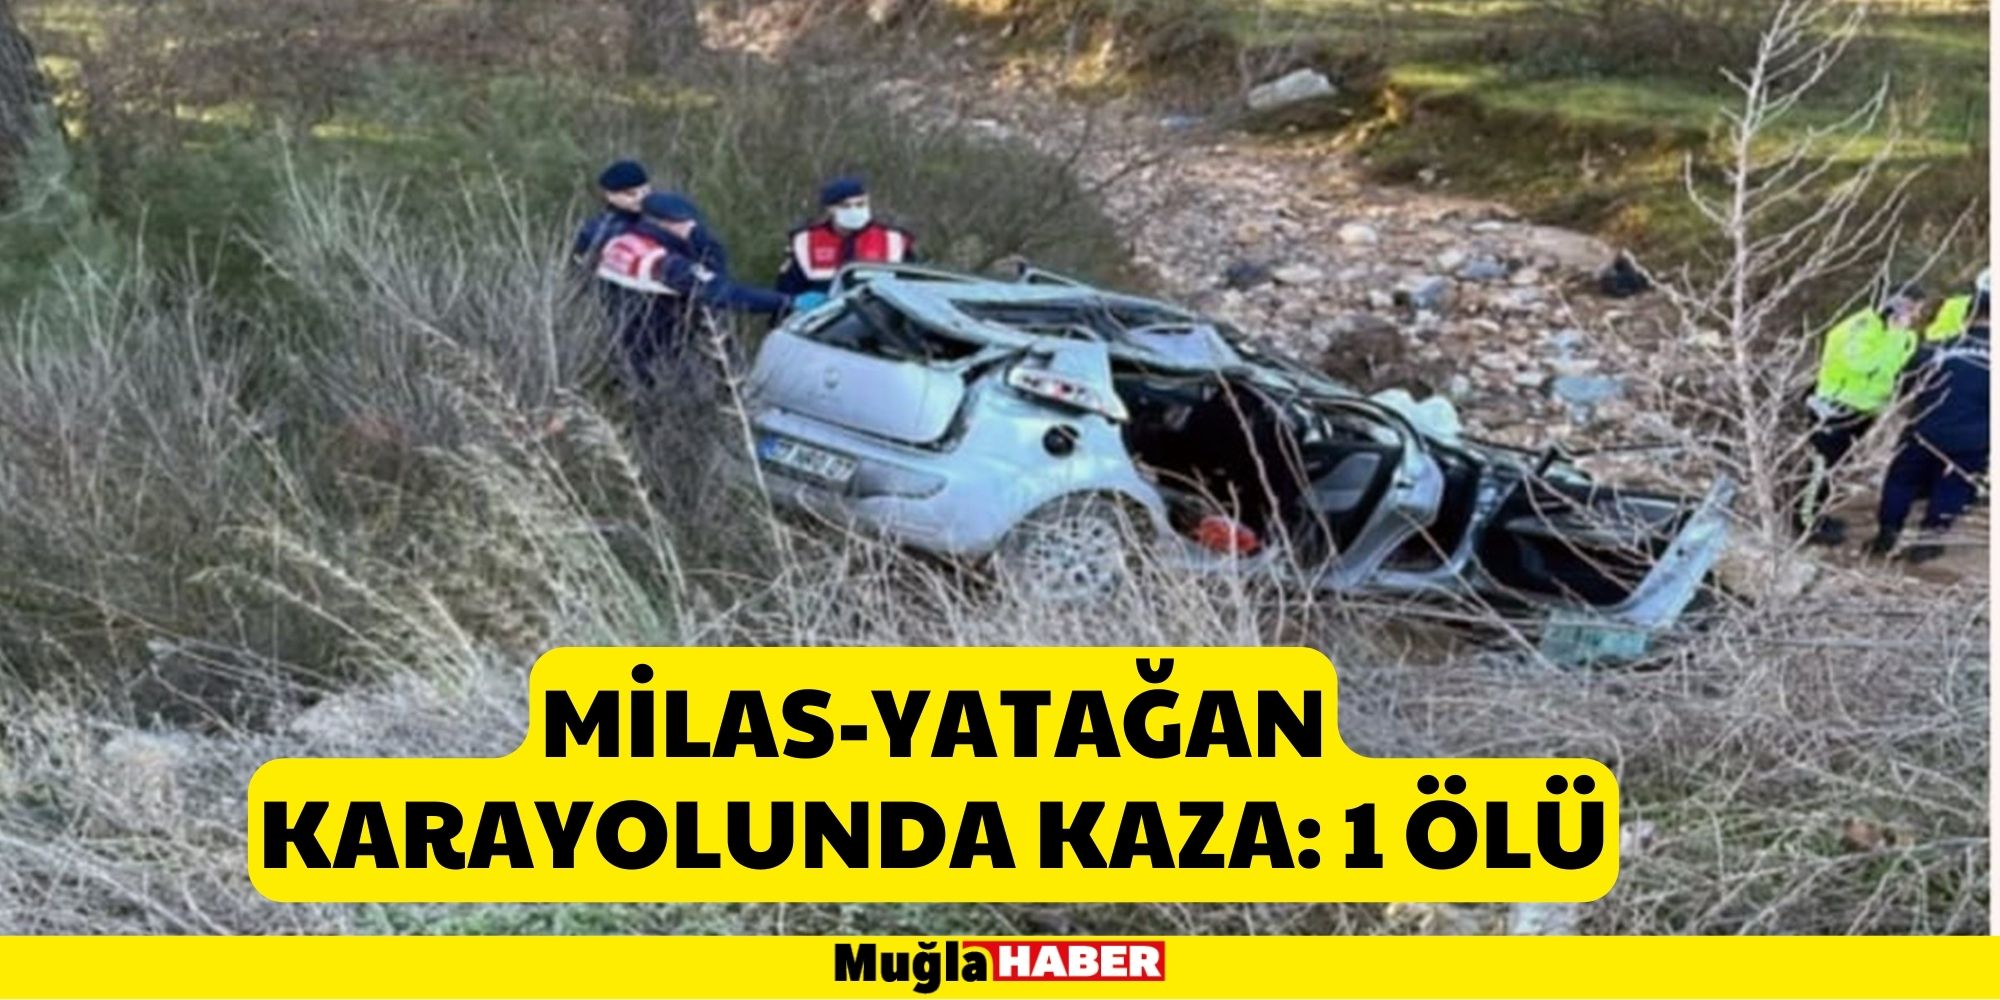 Milas-Yatağan karayolunda kaza: 1 ölü